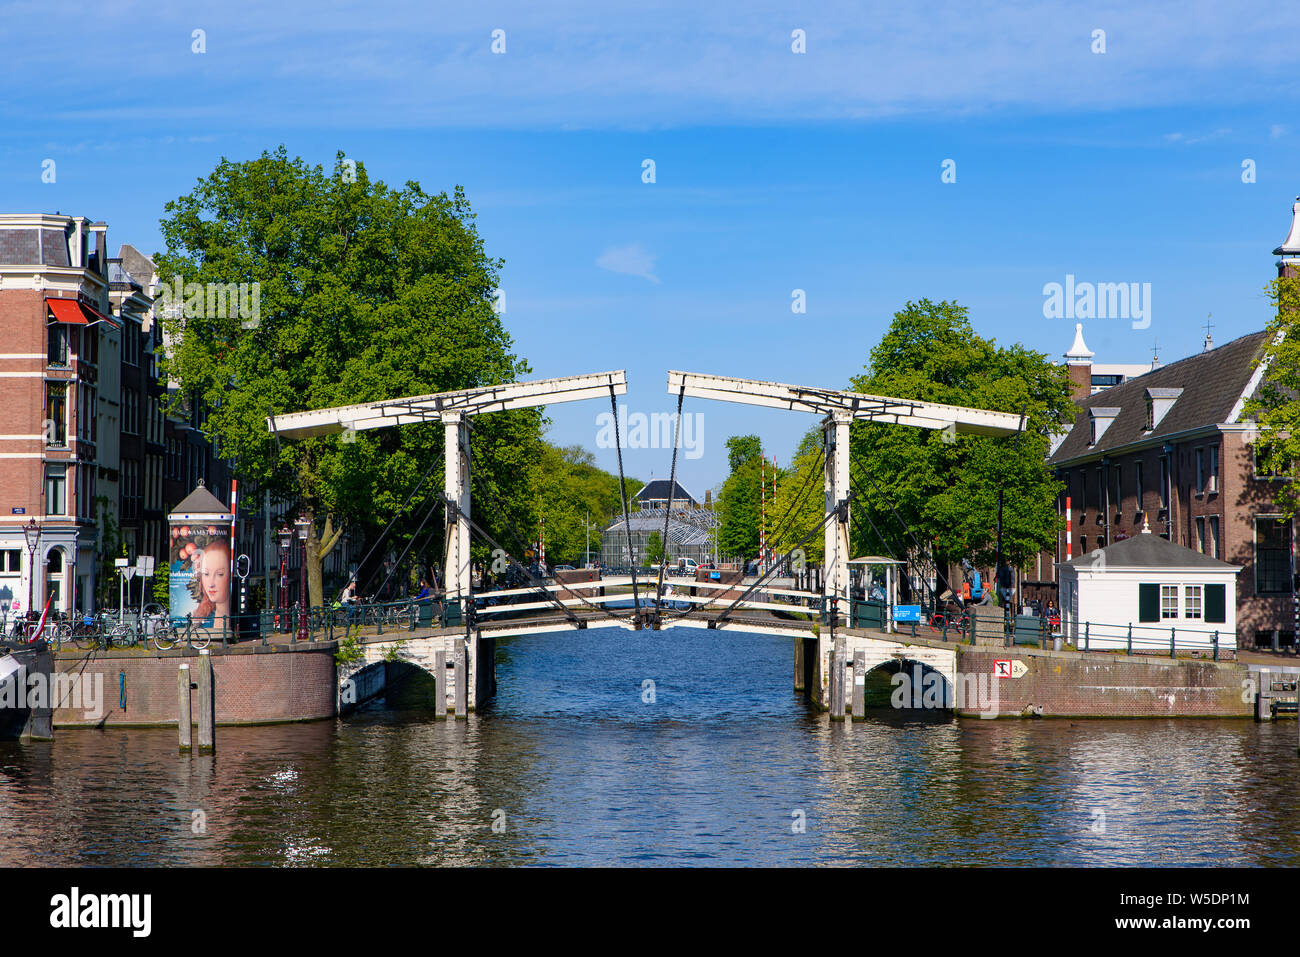 Gebäude, Bäume, und Boote auf dem Kanal in Amsterdam, Niederlande Stockfoto